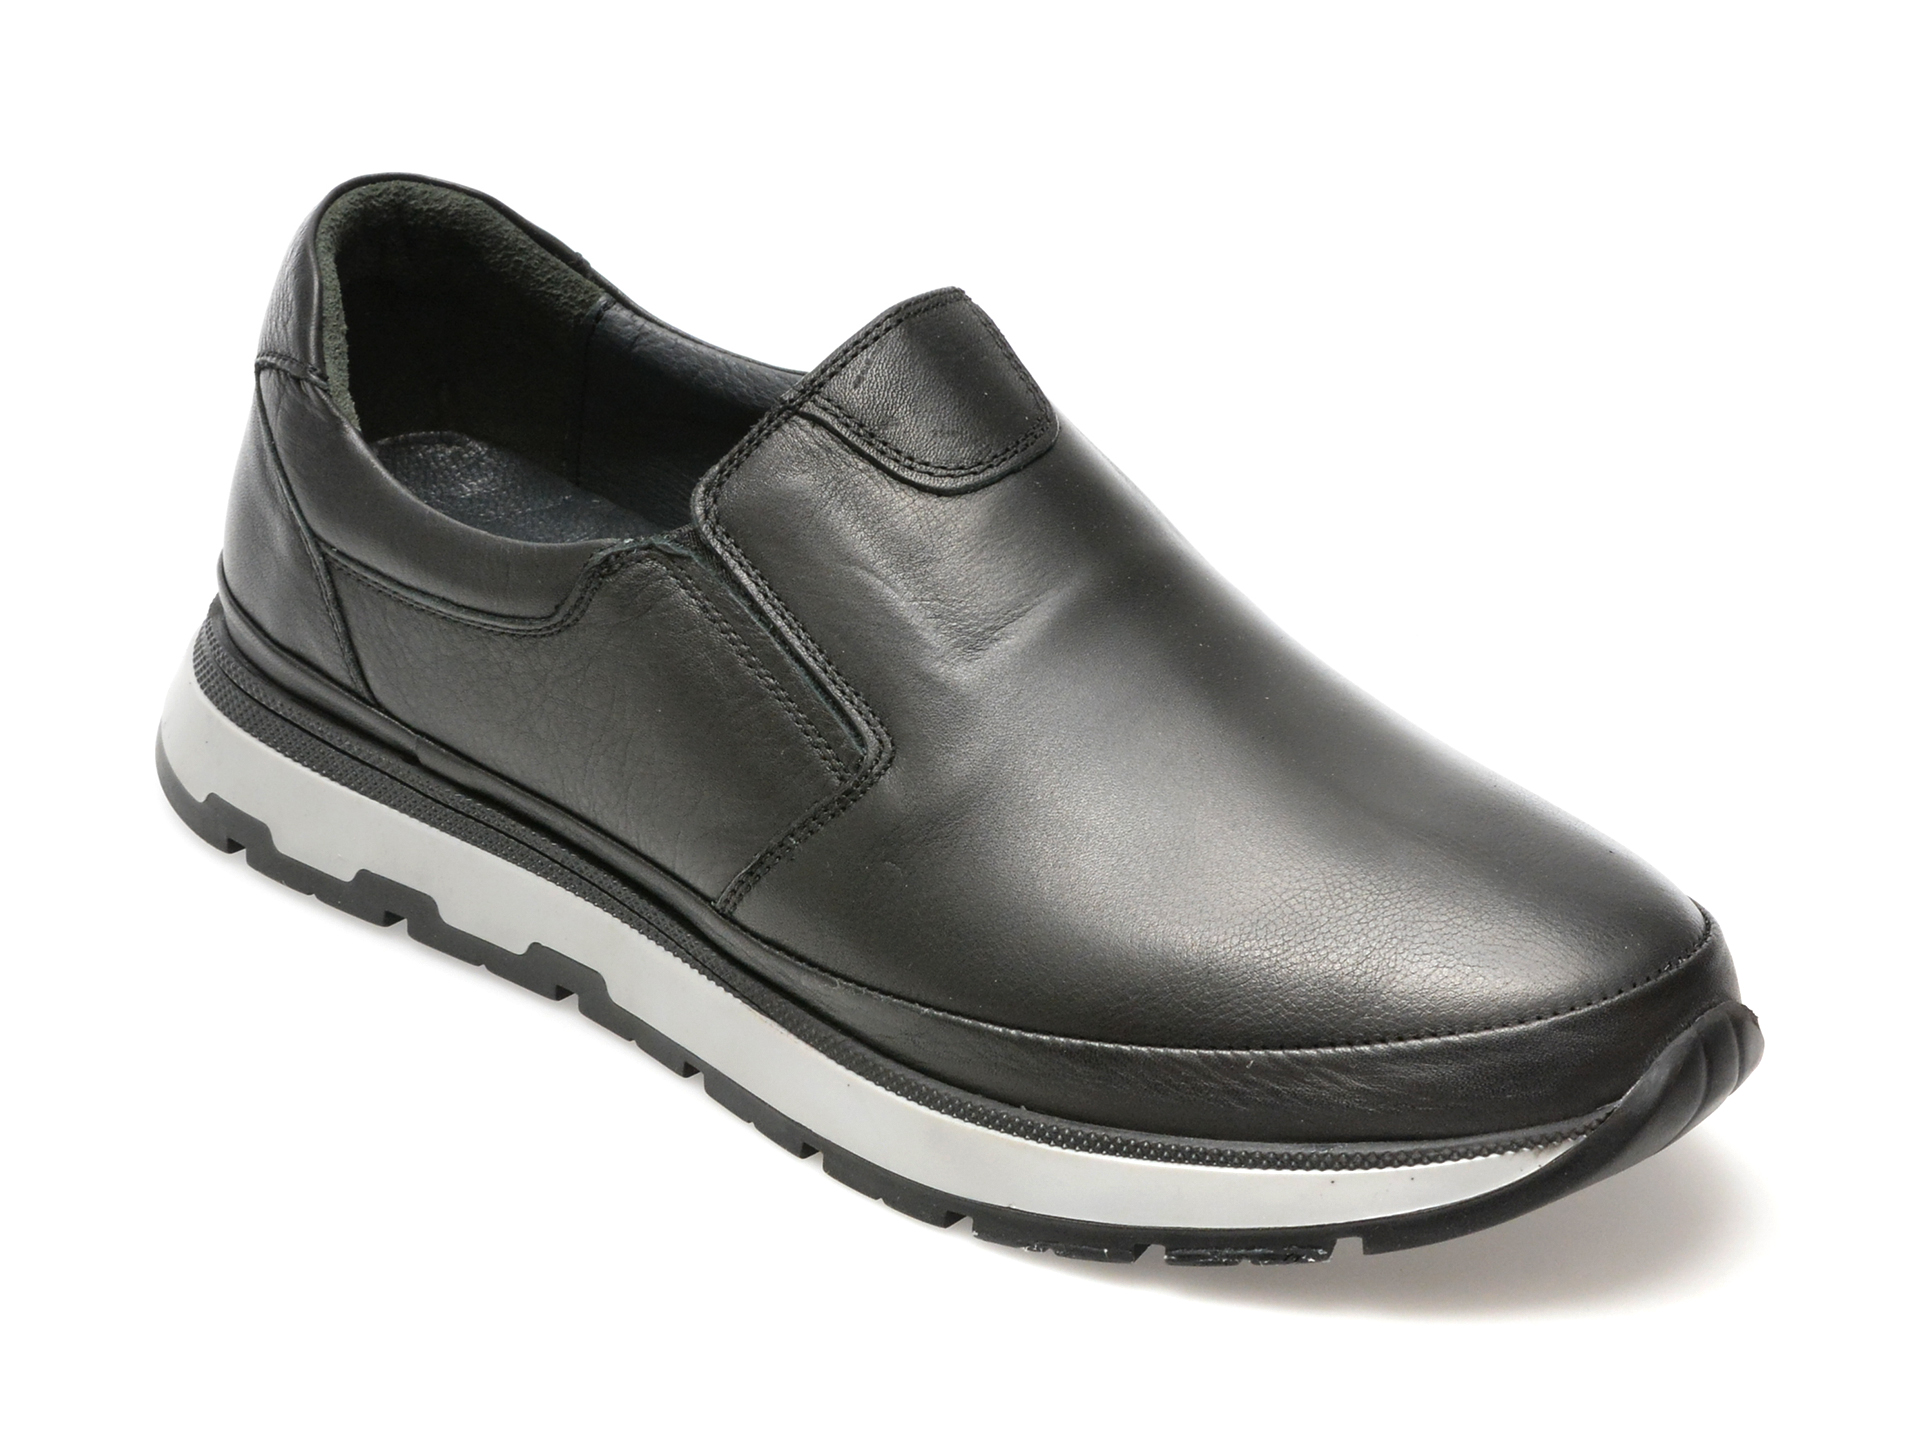 Pantofi AXXELLL negri, SY703, din piele naturala /barbati/pantofi